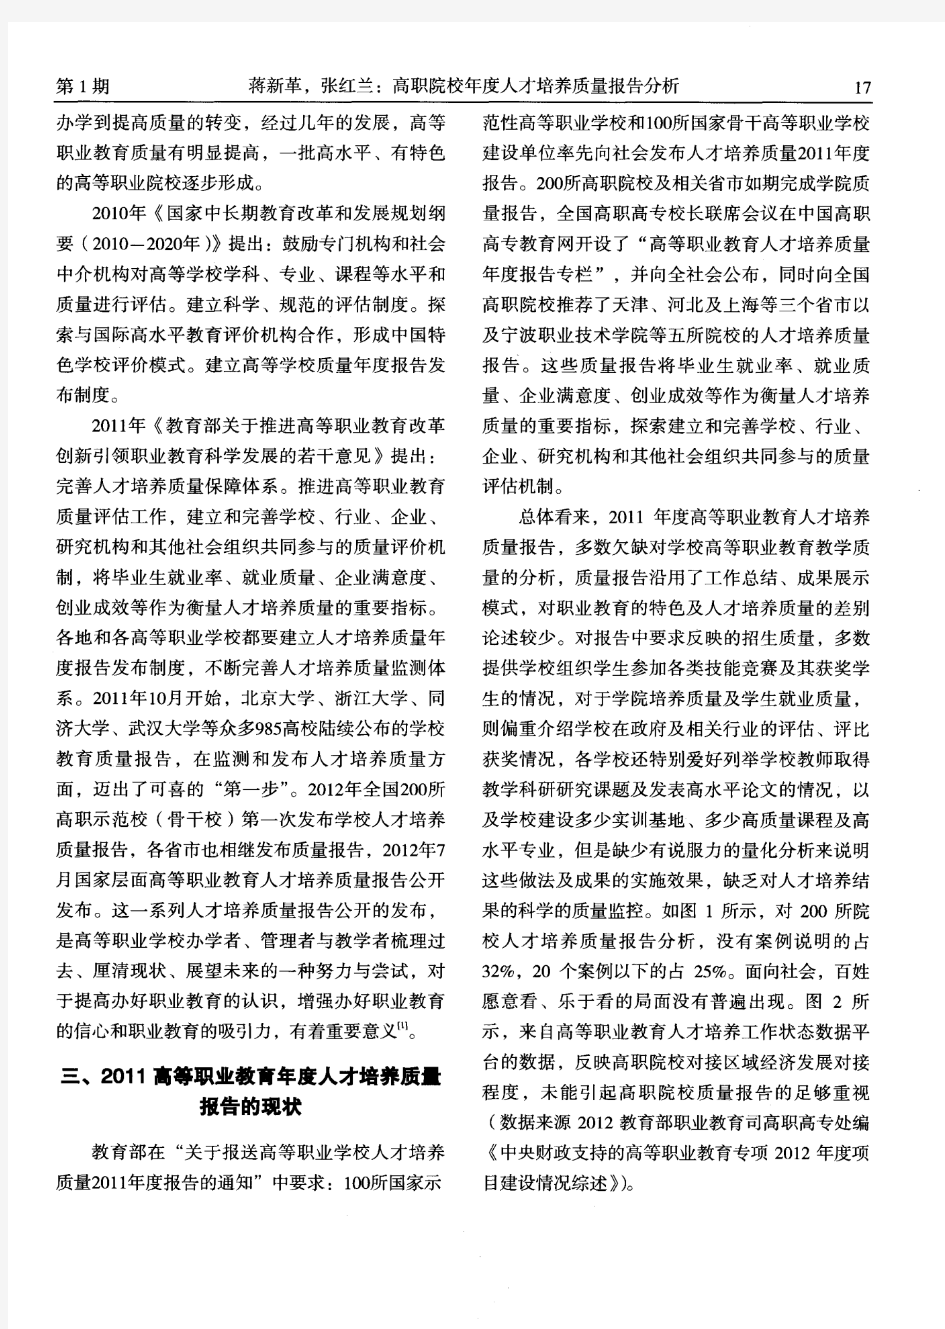 高职院校年度人才培养质量报告分析——以广州铁路职业技术学院为例